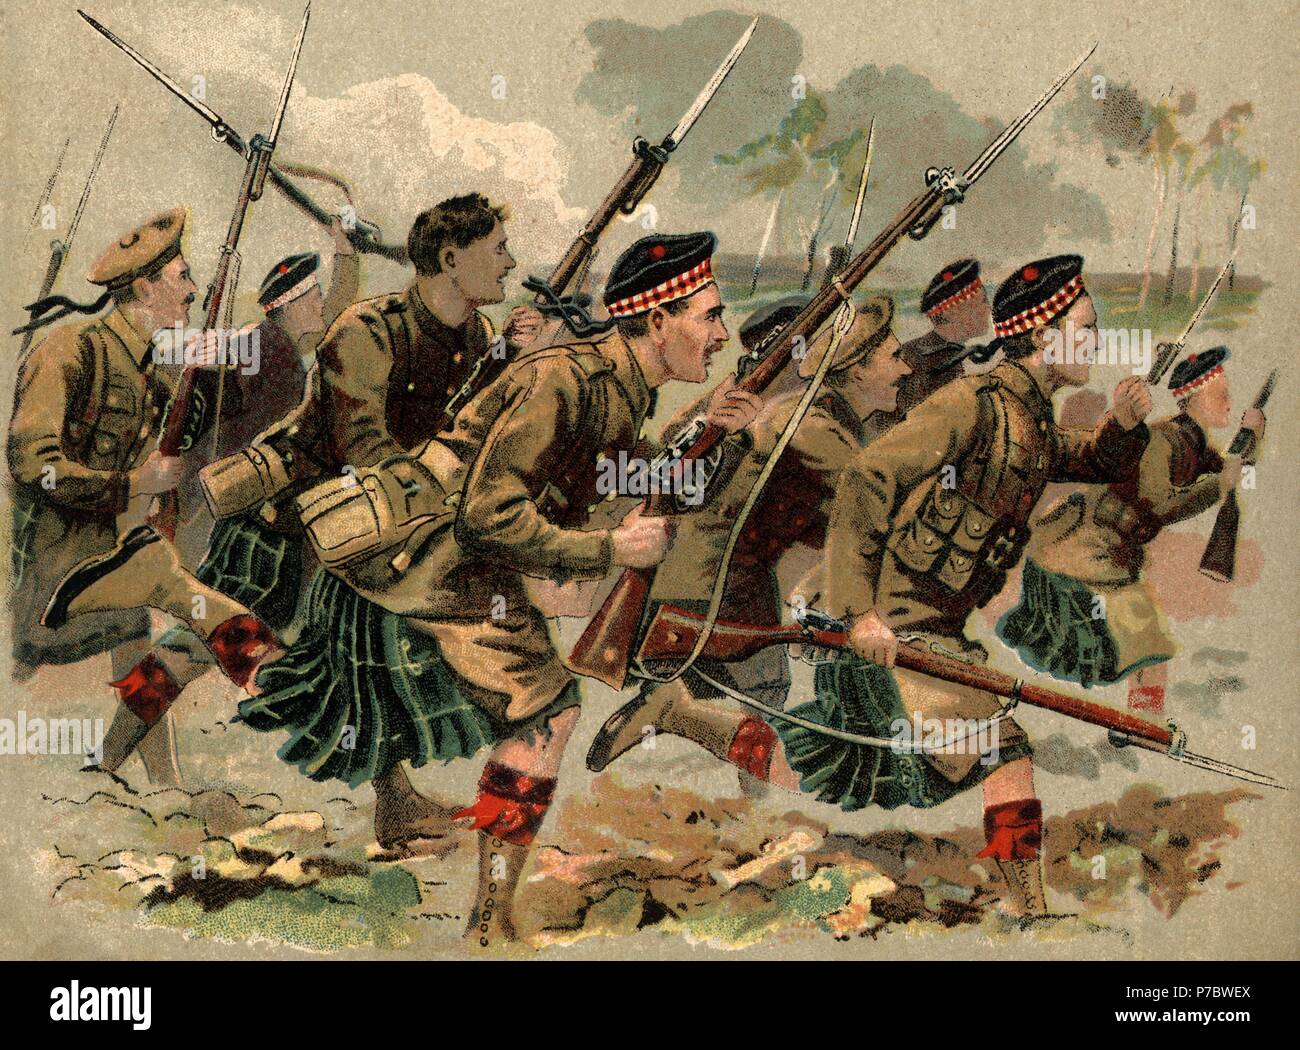 Europa. Primera guerra mundial (1914-1918). Carga a la bayoneta de un regiminerto escocés. Stock Photo